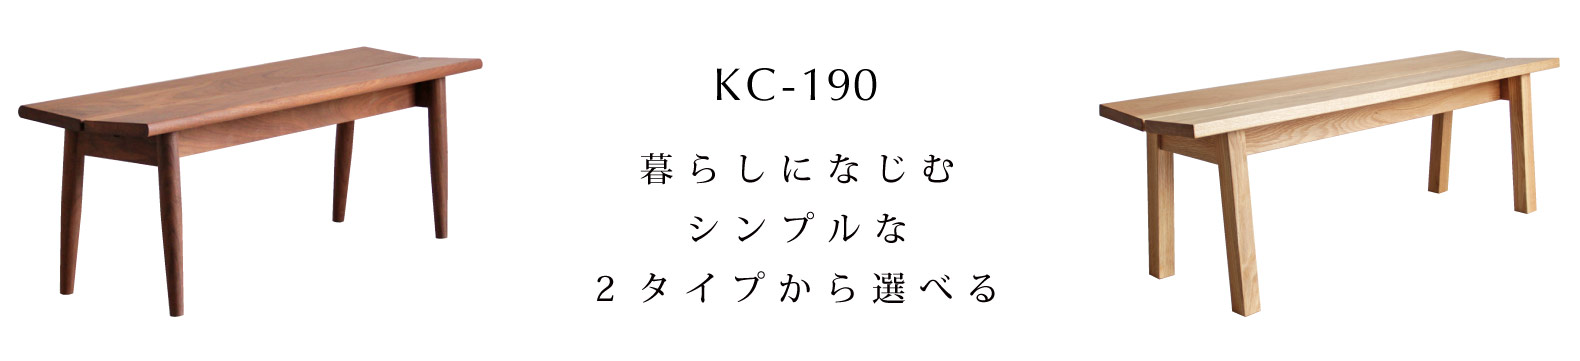 KC-190@x`